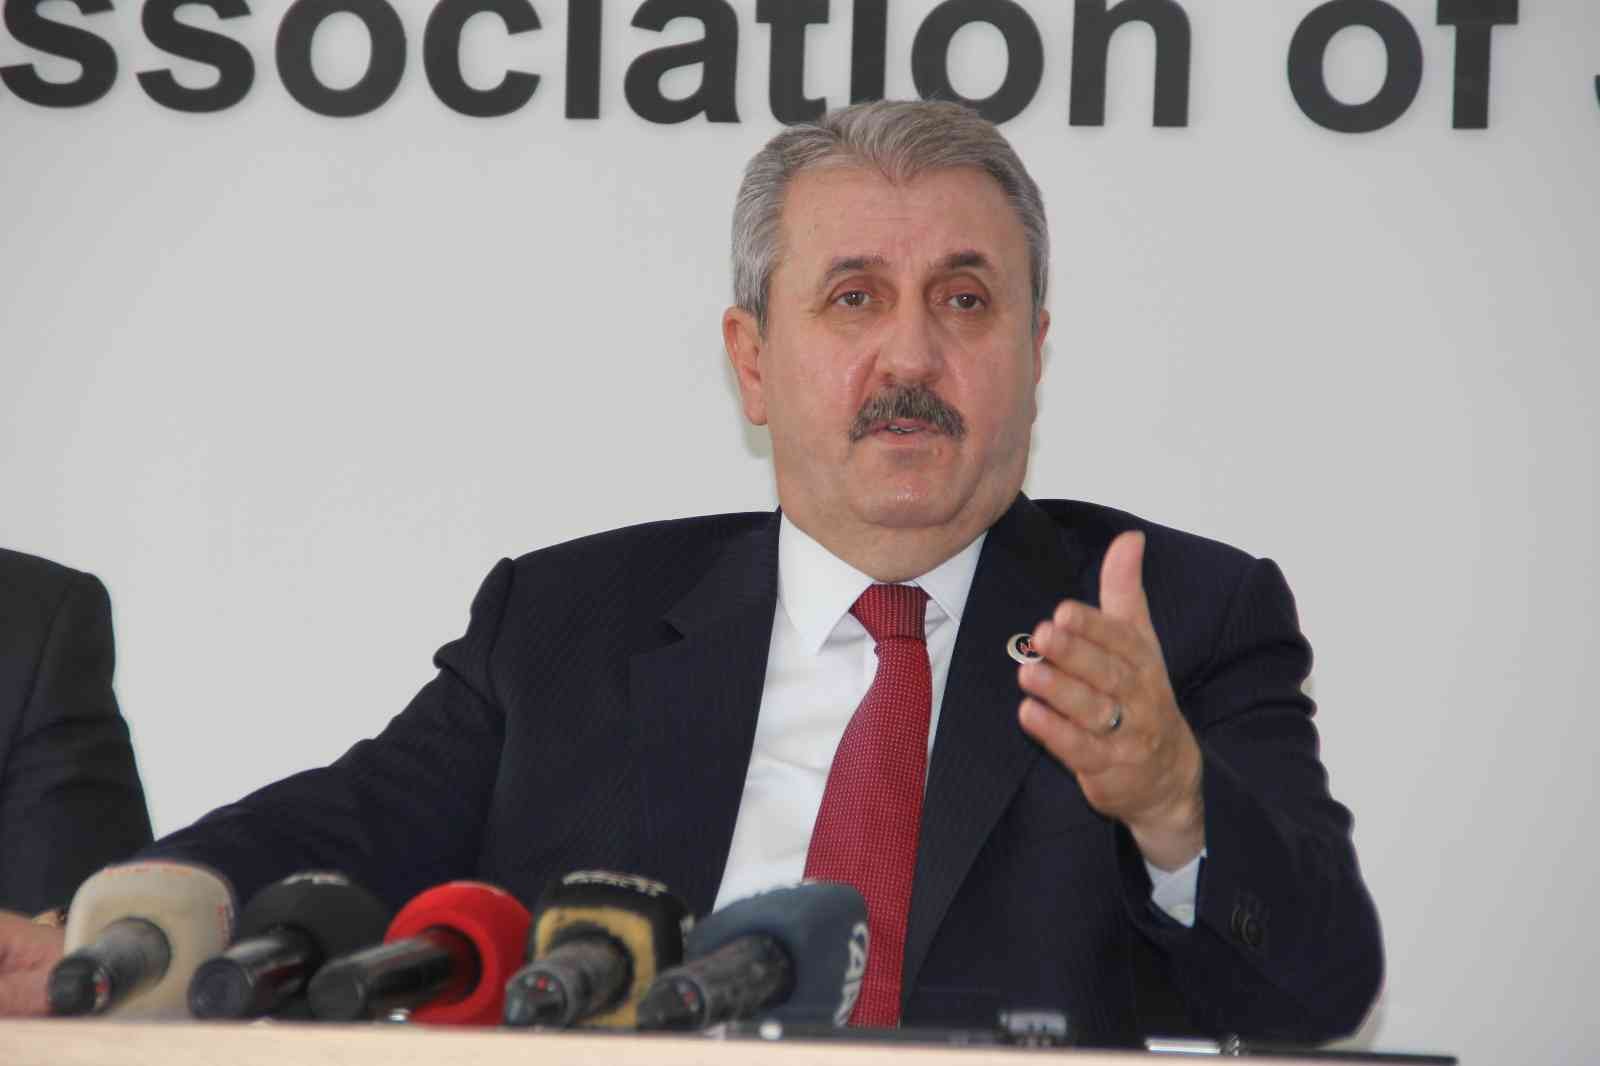 BBP Genel Başkanı Destici: “Basın olmazsa demokrasi eksik kalır”